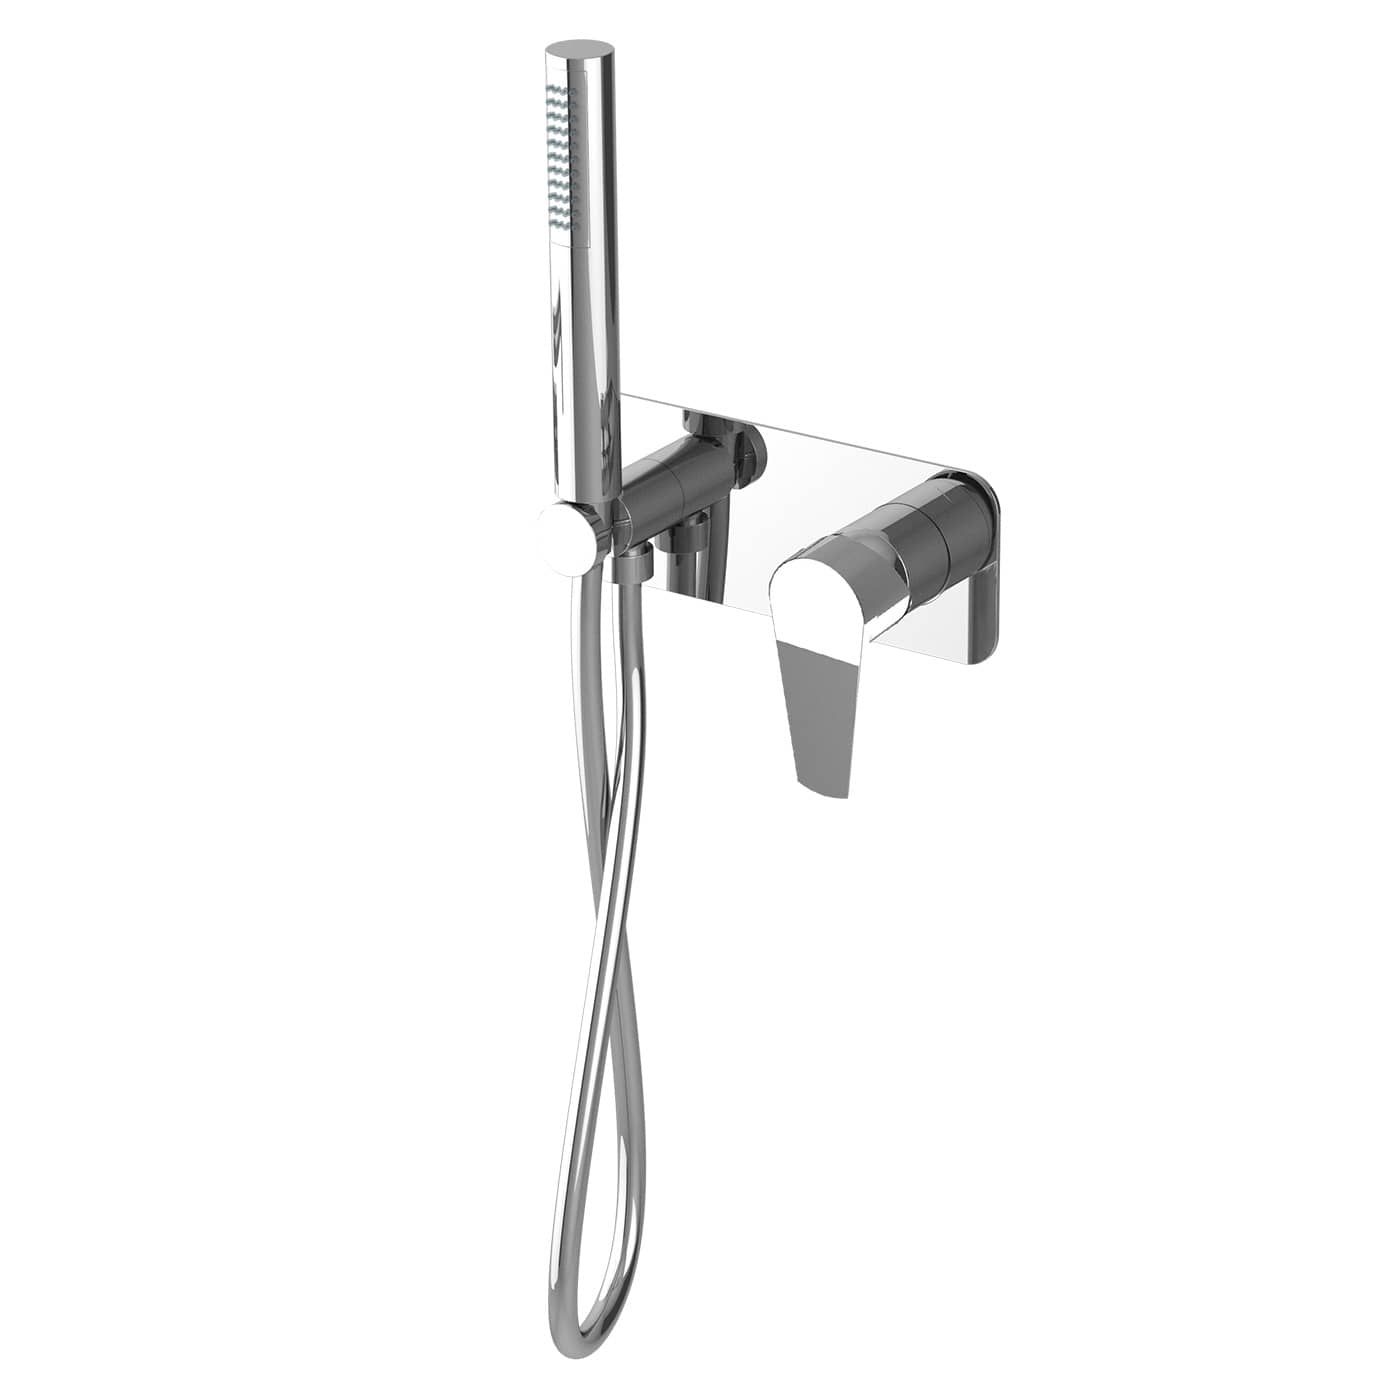 KIED130RO - Parti esterne per monocomando incasso doccia con kit doccia